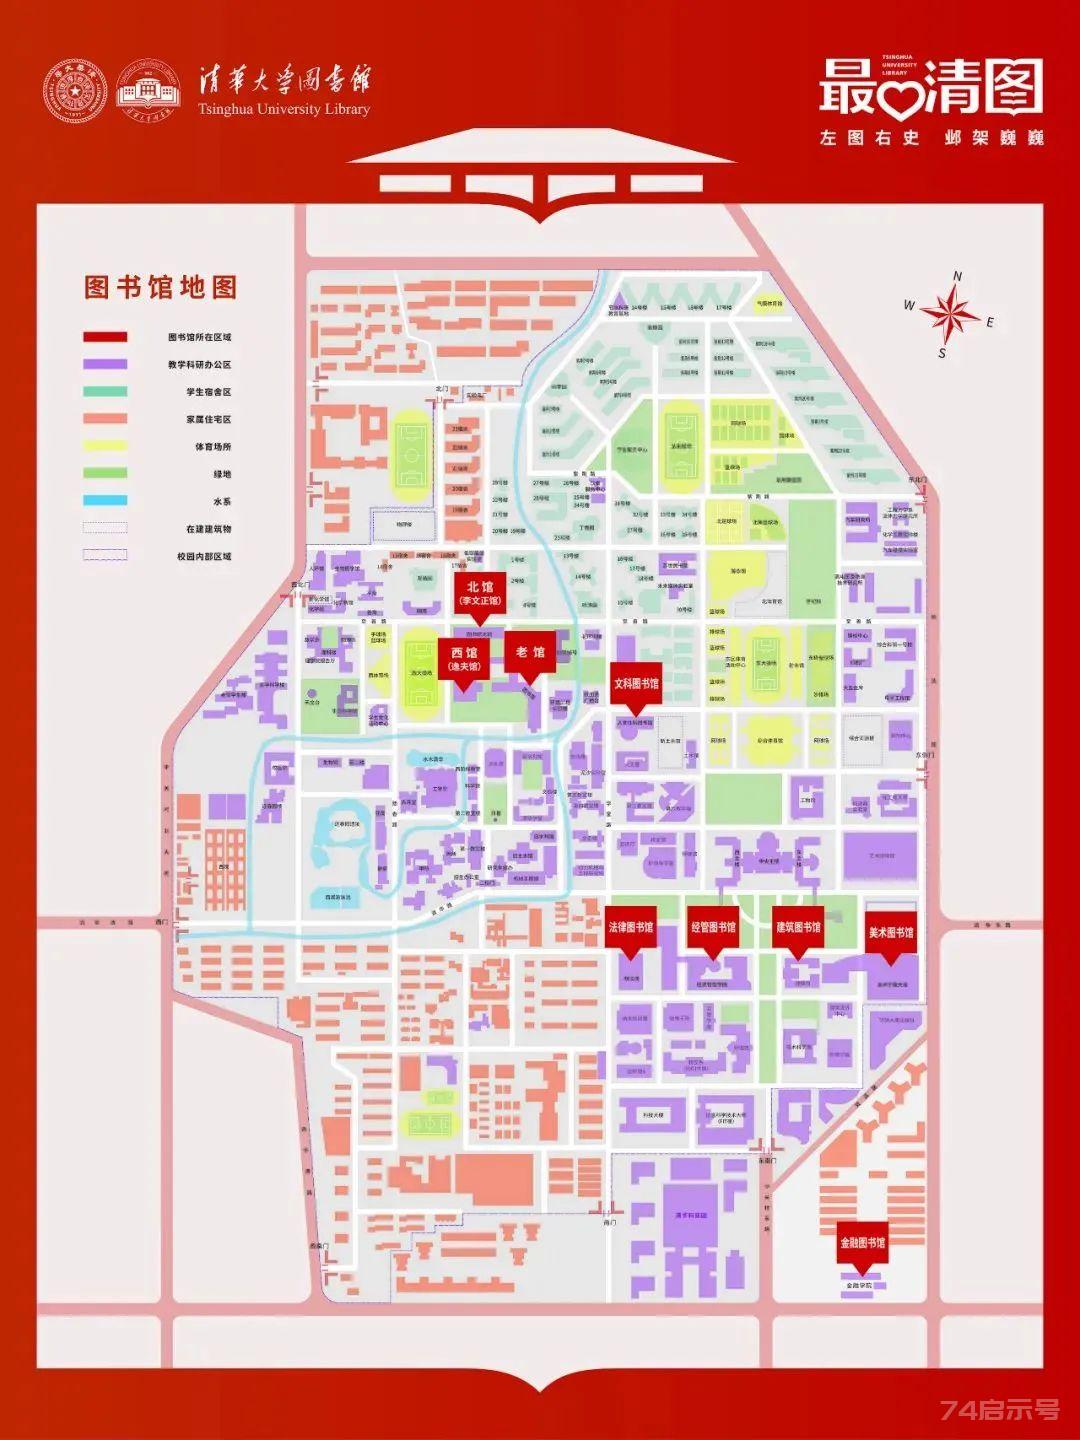 清华大学到底有多少个图书馆？